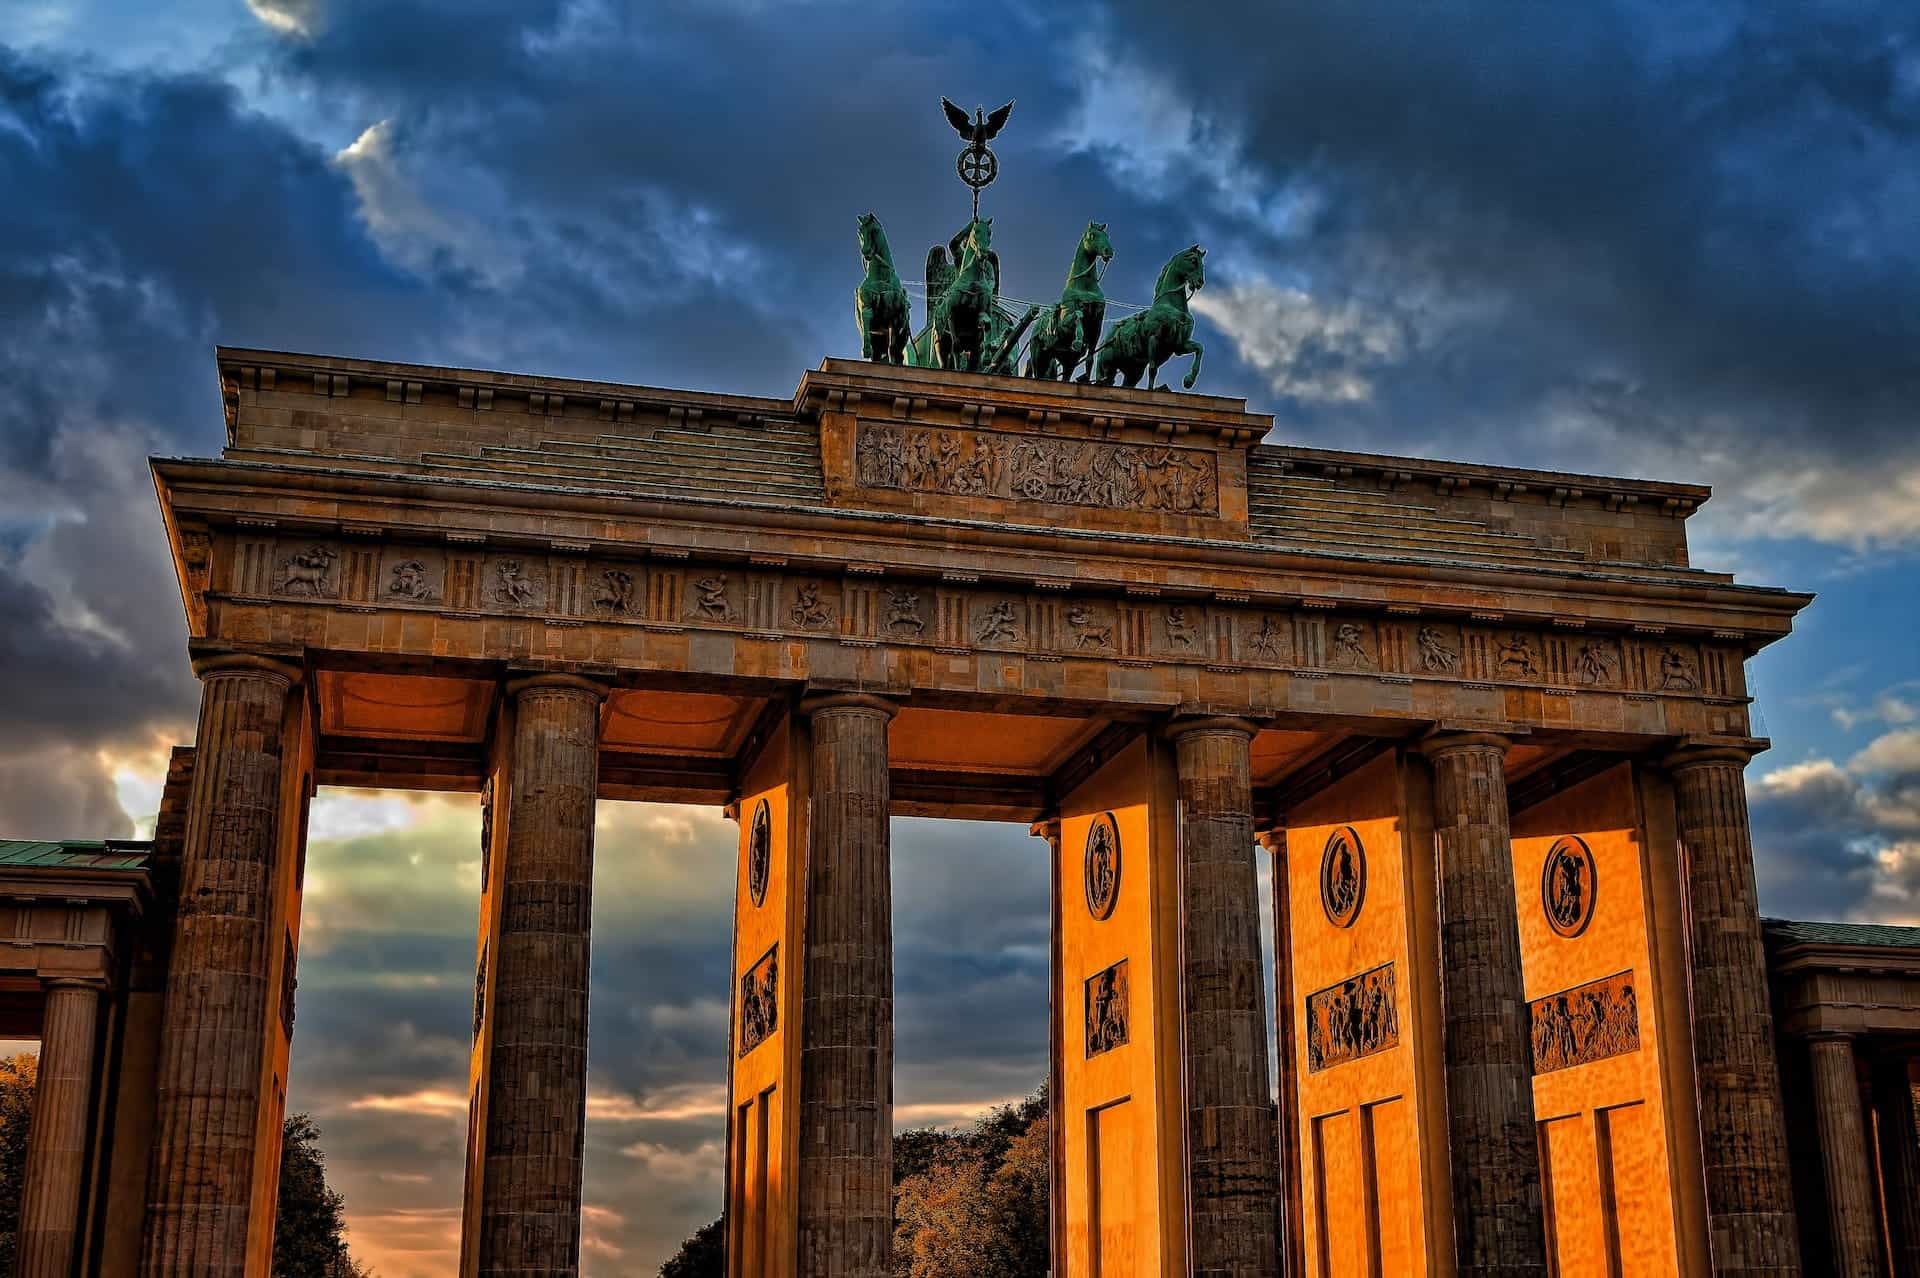 Gerbang Brandenburg dilihat saat matahari terbenam.